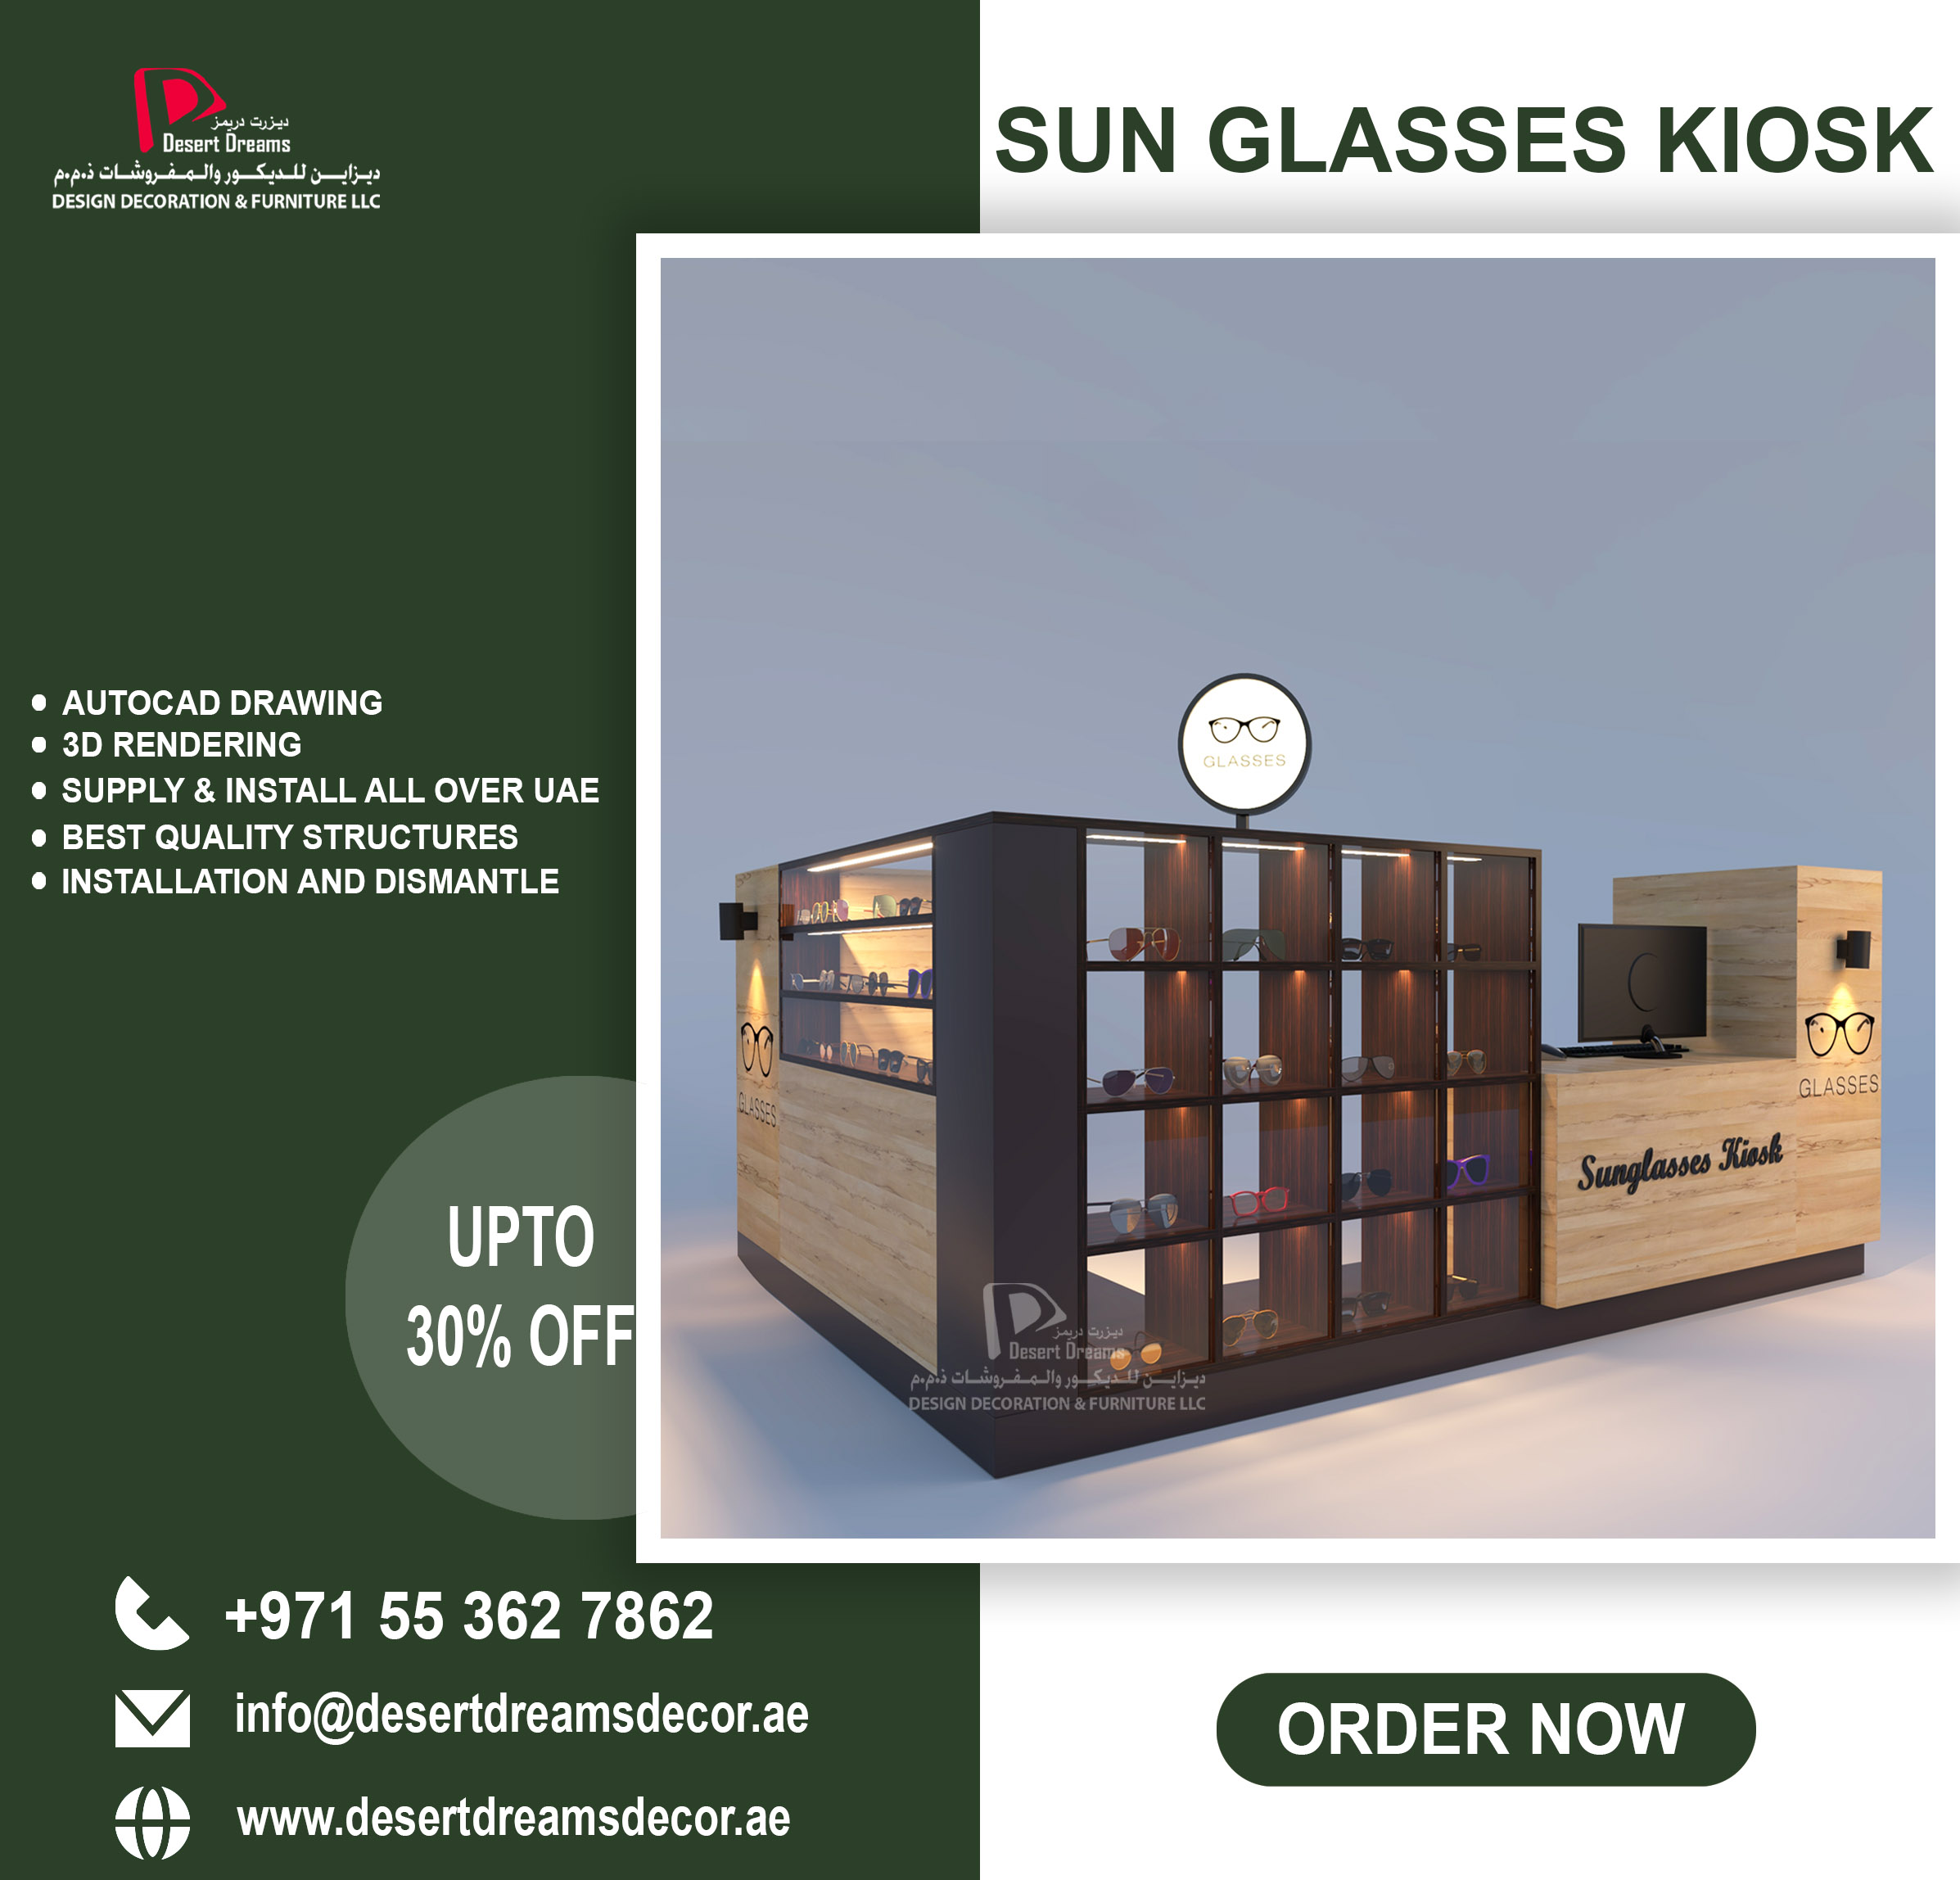 Sun Glasses Kiosk | Retail Kiosk | Mall Kiosk Suppliers in Uae.